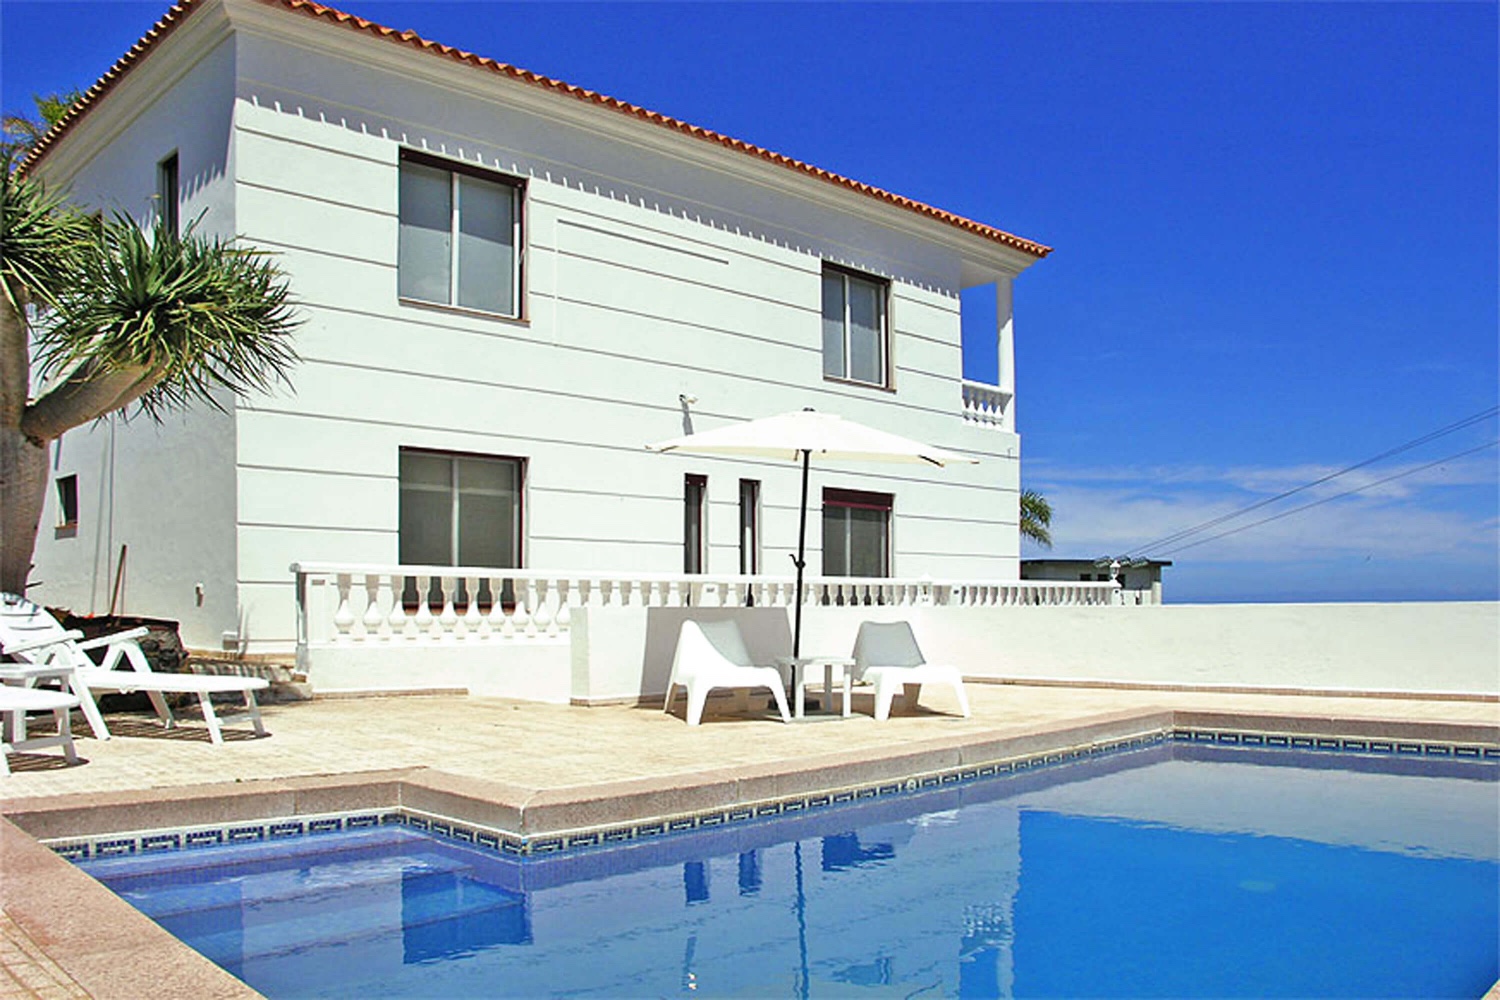 Modernes Ferienhaus mit großem Außenbereich für einen erholsamen Urlaub in Santa Ursula im Norden von Teneriffa.